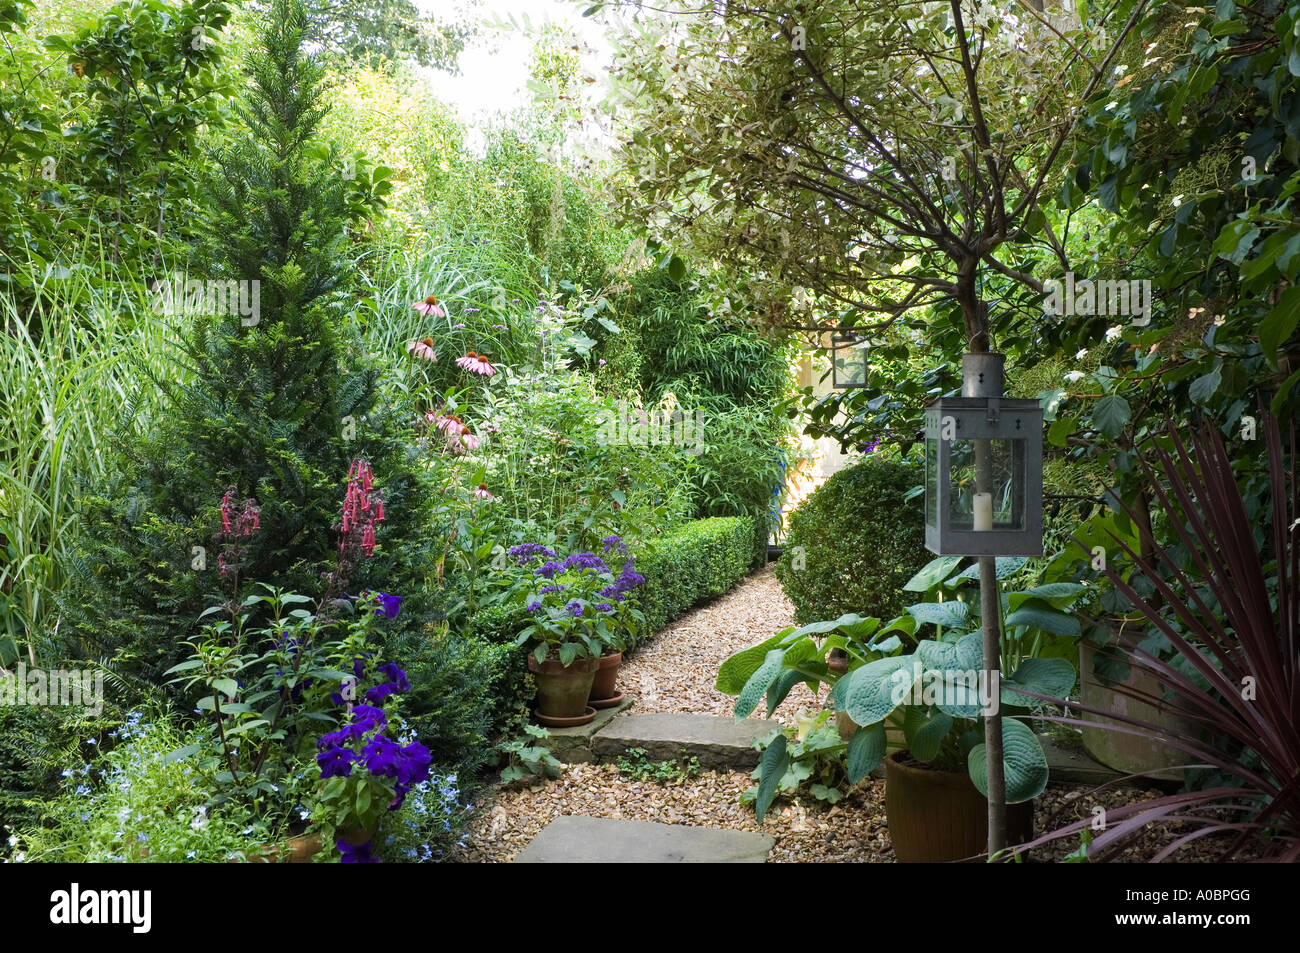 Kiesweg in einem London-Garten mit Laterne und Buchsbaum Hecke Stockfoto